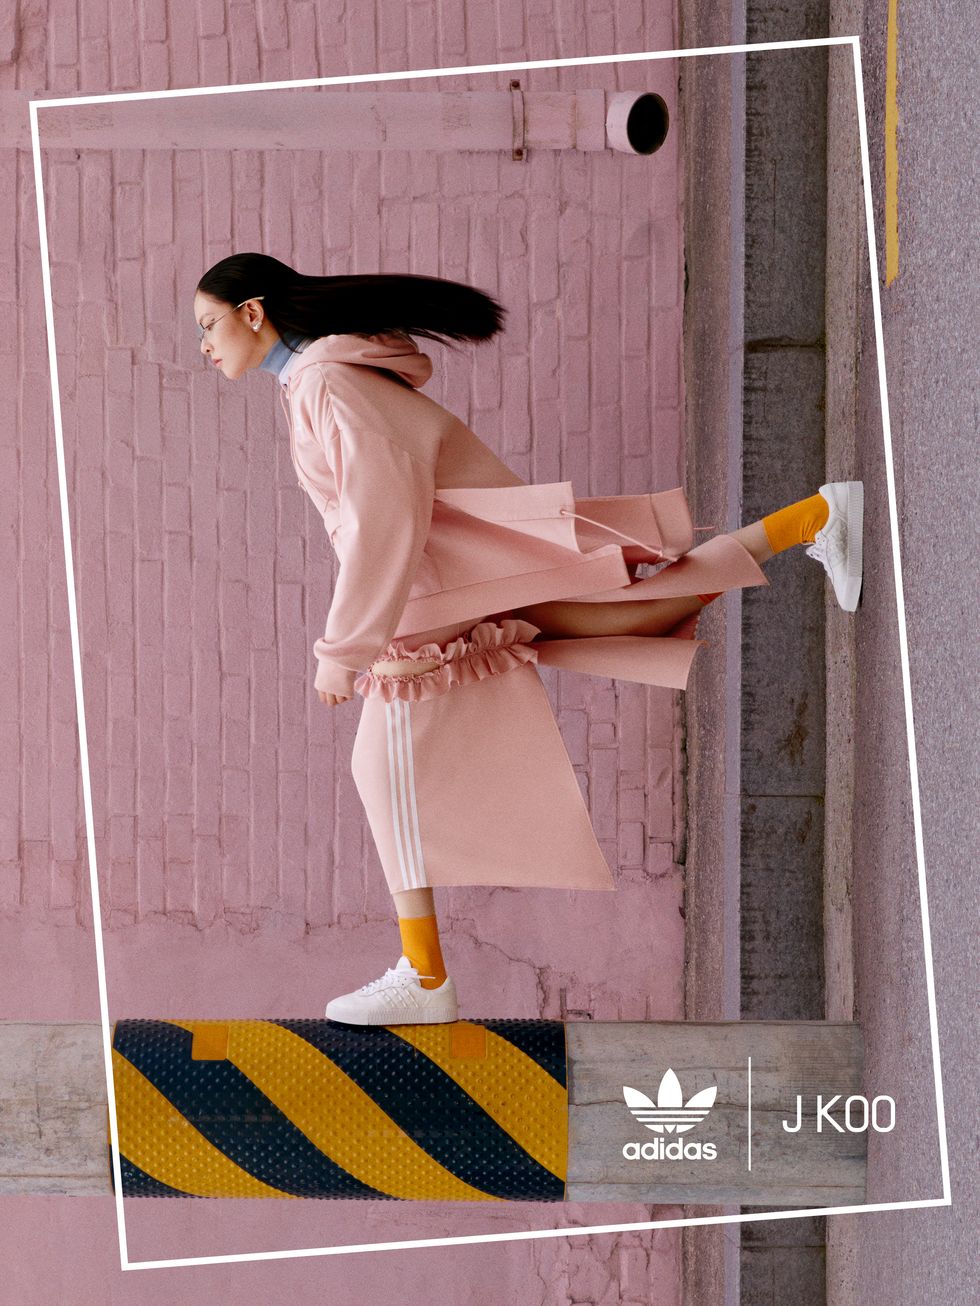 粉红控注意！ Adidas Originals X J KOO 设计师联名系列太梦幻 运动风穿搭配粉色荷叶边 美出新高度-bbin官网_ bbin投诉_bbin平台_bbin客服_bbin宝盈集团官网